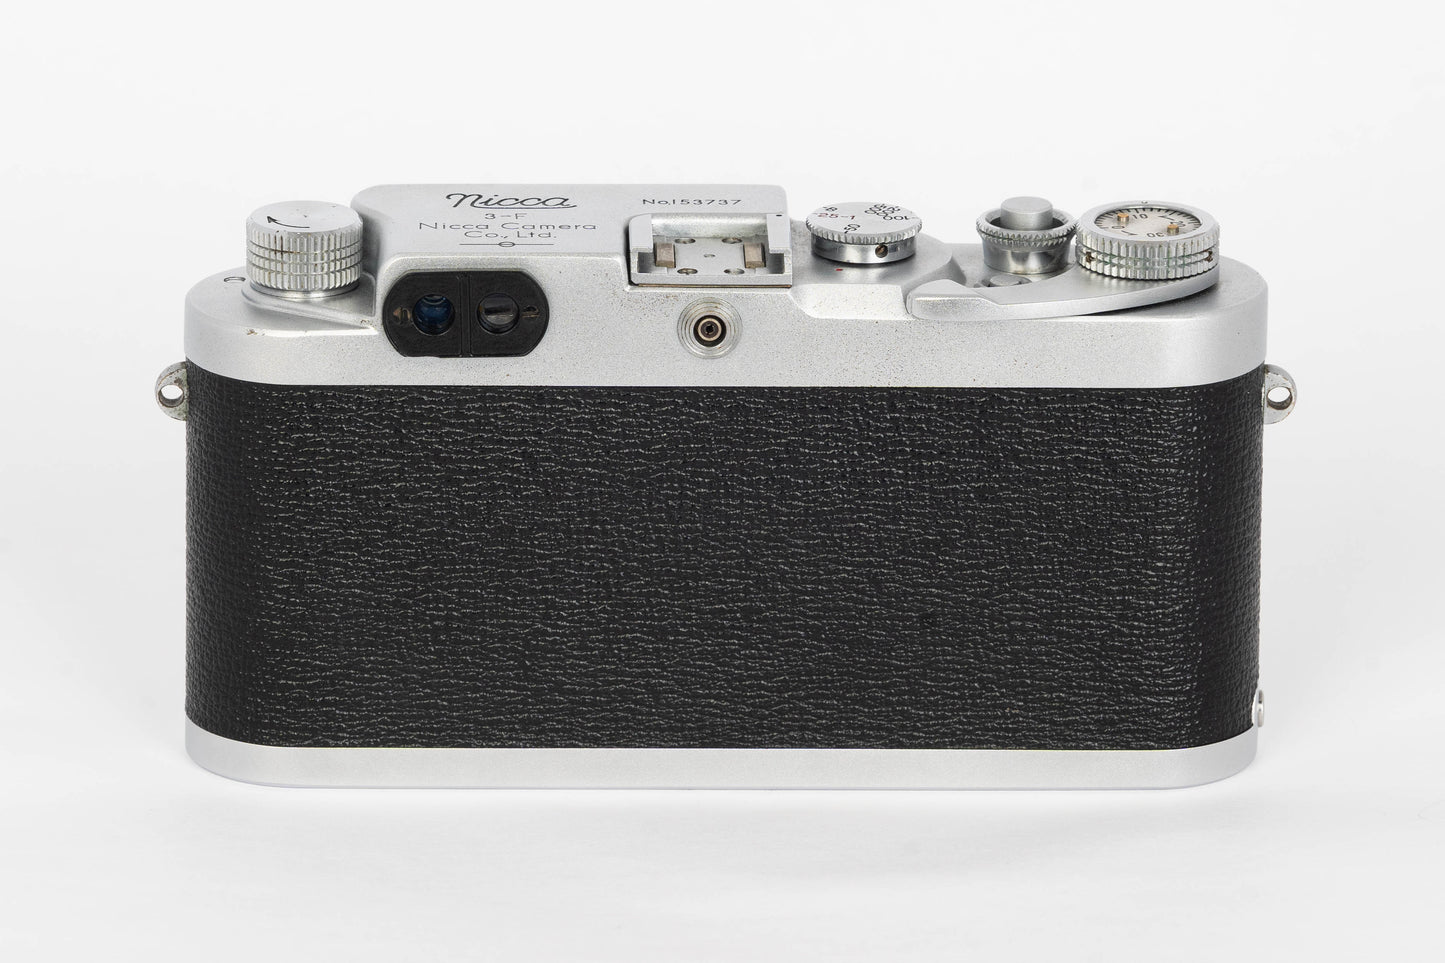 Nicca 3-F IIIf Rangefinder 35mm Film Camera Body LTM39